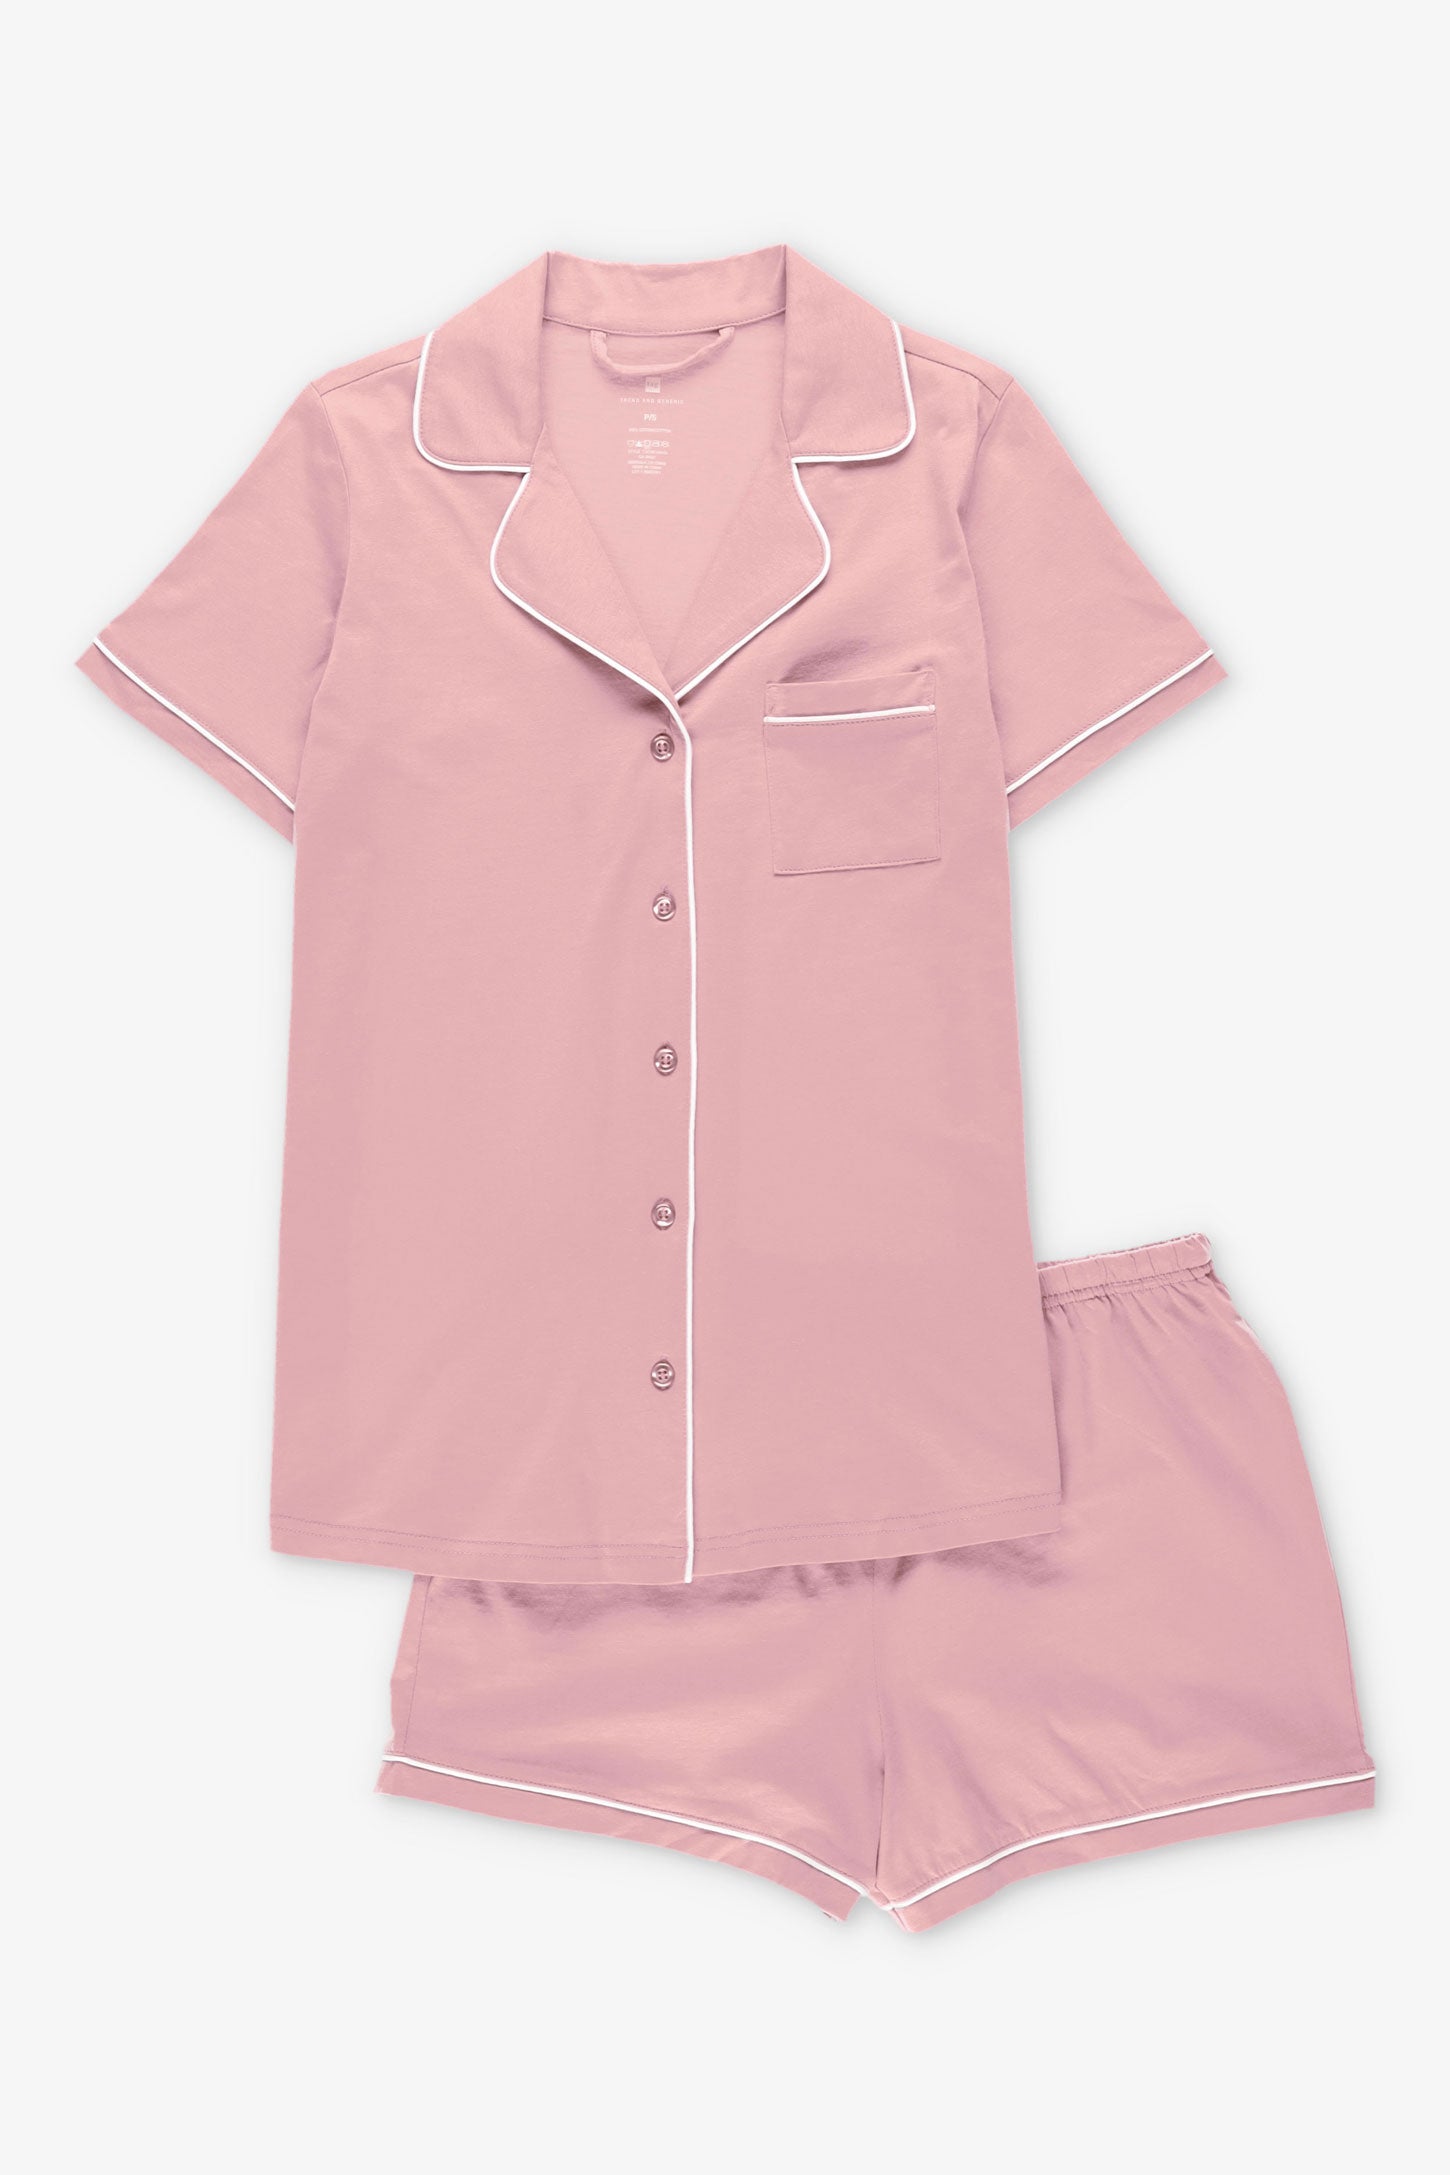 Pyjama 2-pièces chemise et short coton - Femme && ROSE CENDRE